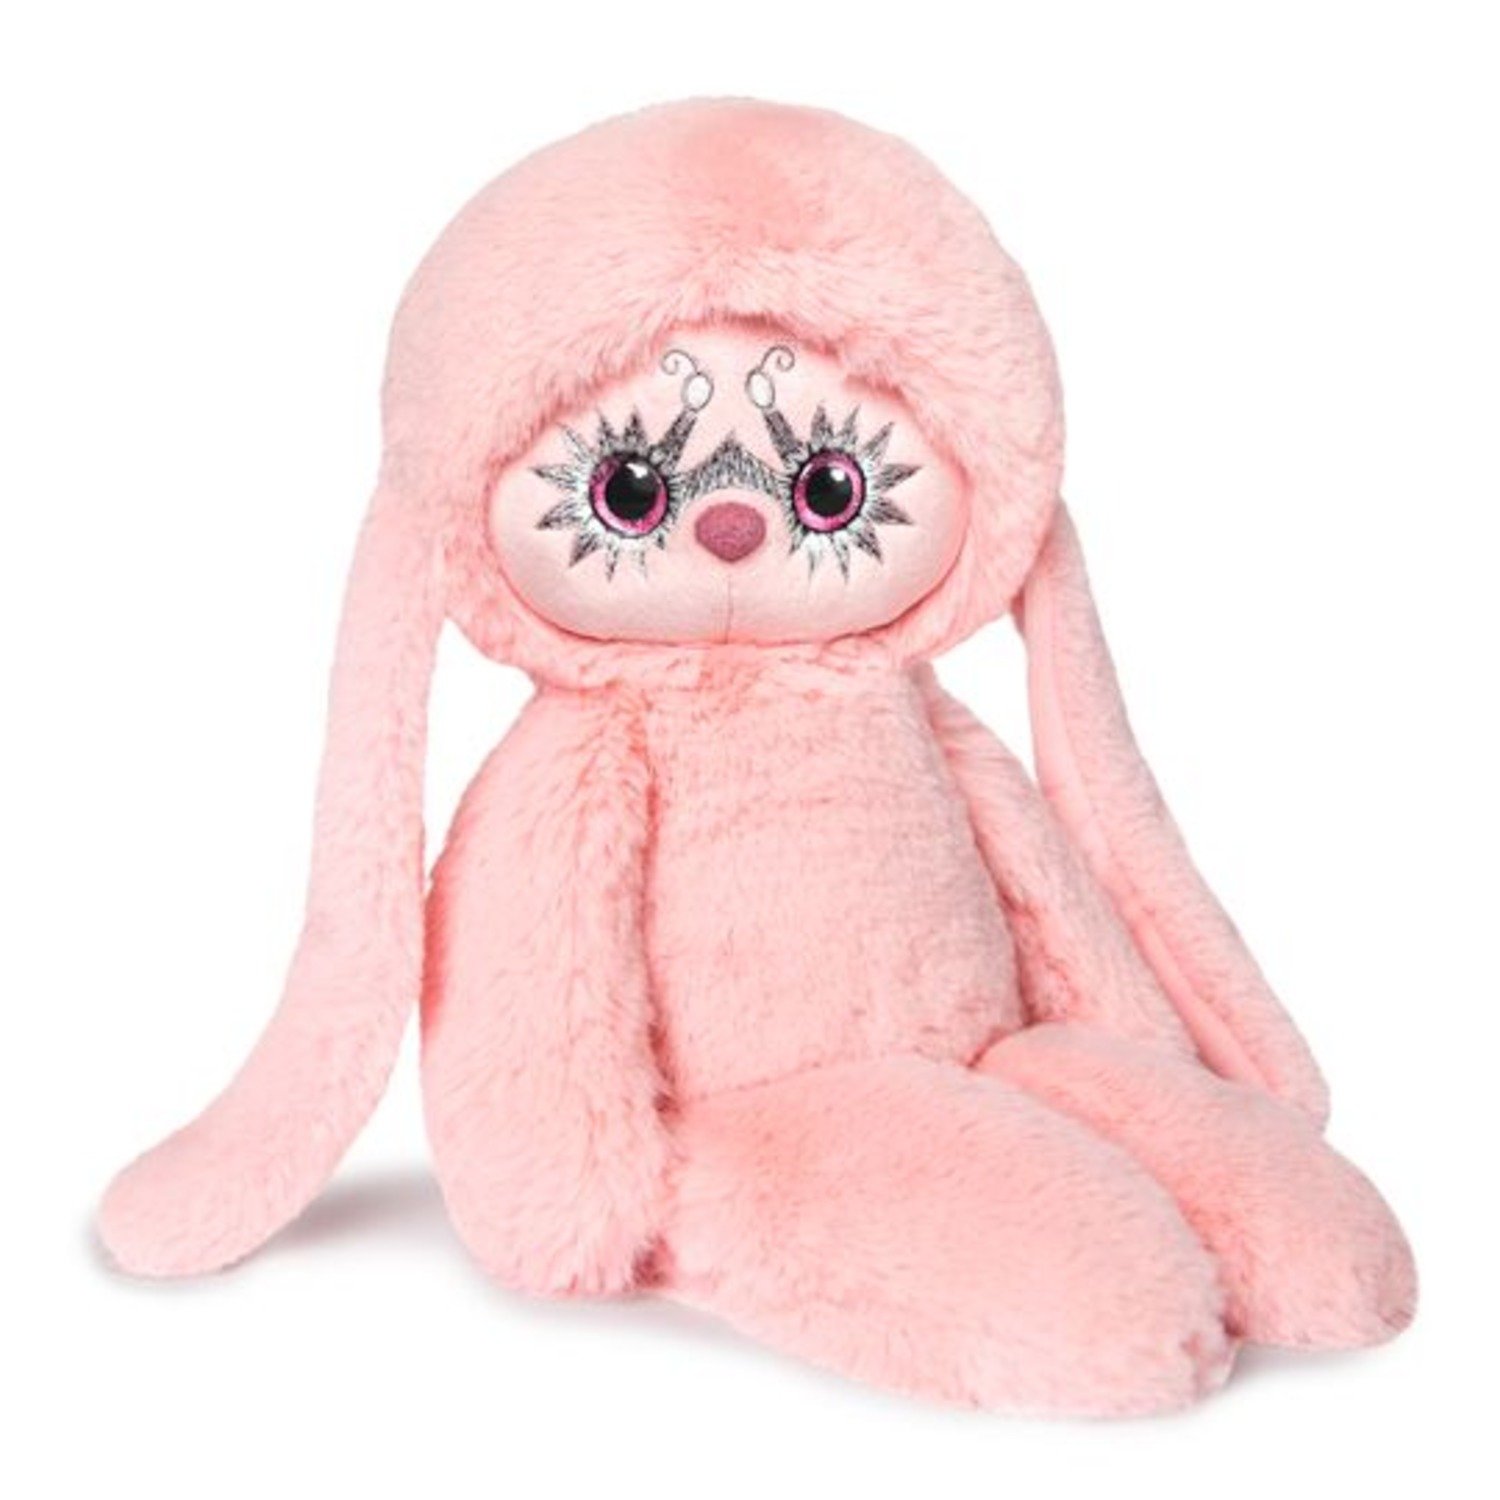 Мягкая игрушка "Лори Колори Её розовый", 30 см., BUDI BASA LR30-01